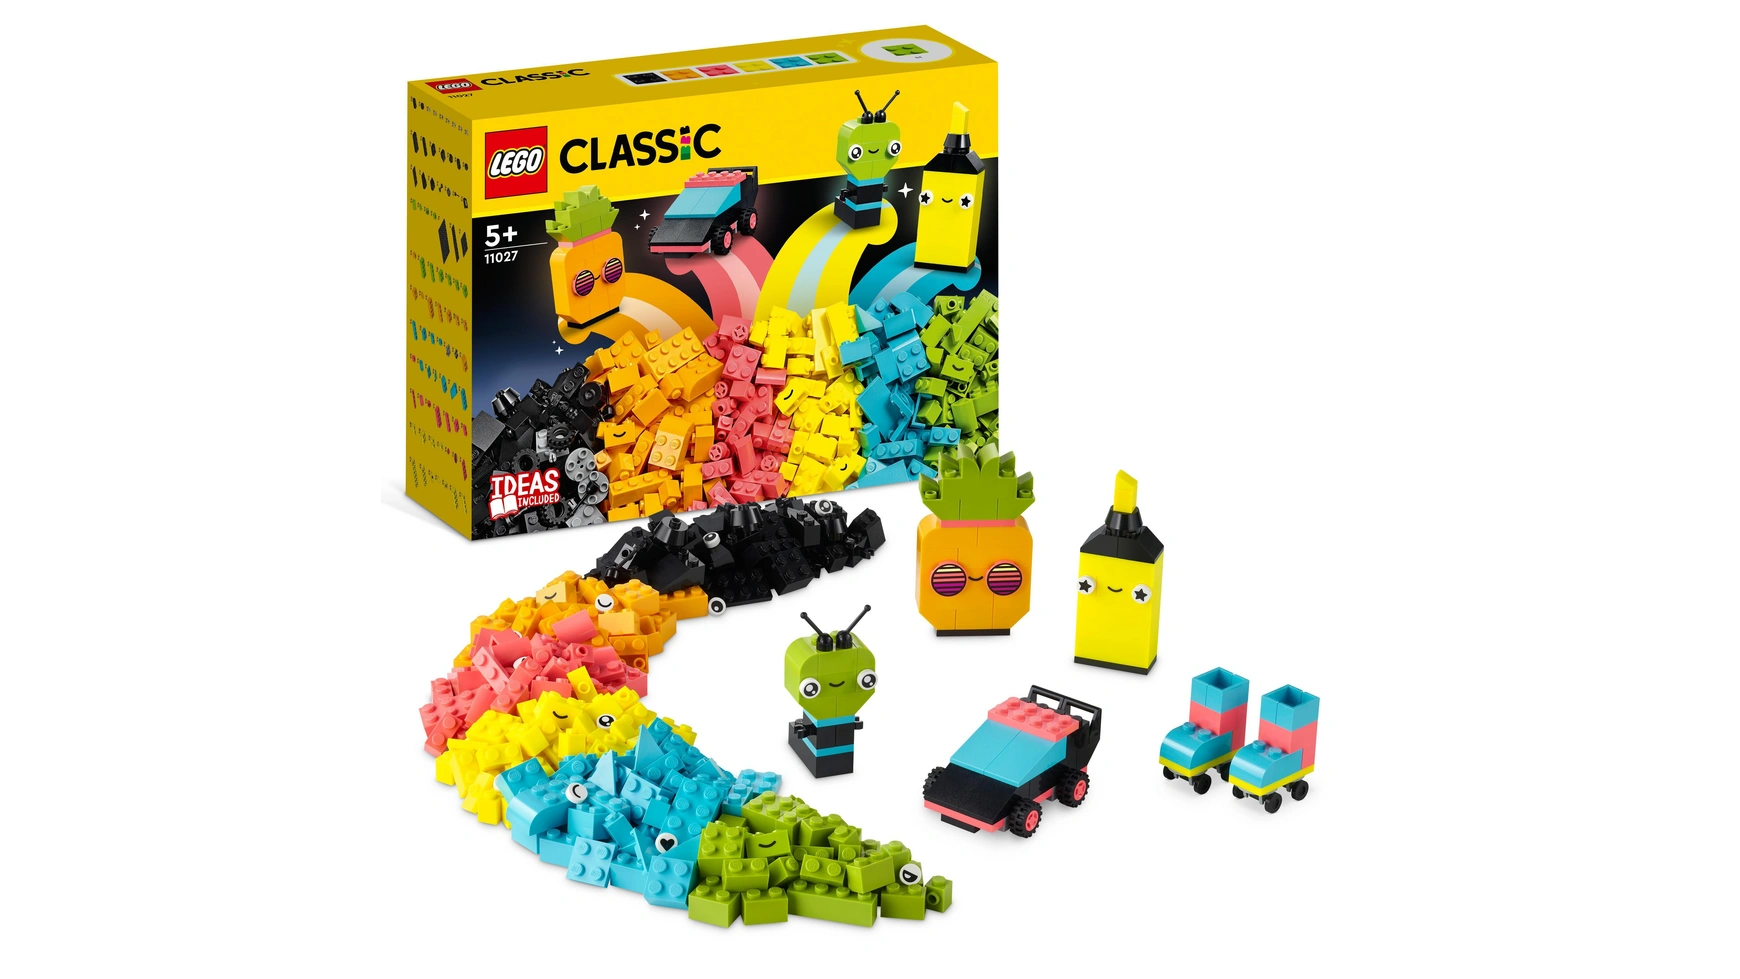 Lego Classic Неоновый творческий набор, строительные блоки для детей от 5 лет и старше